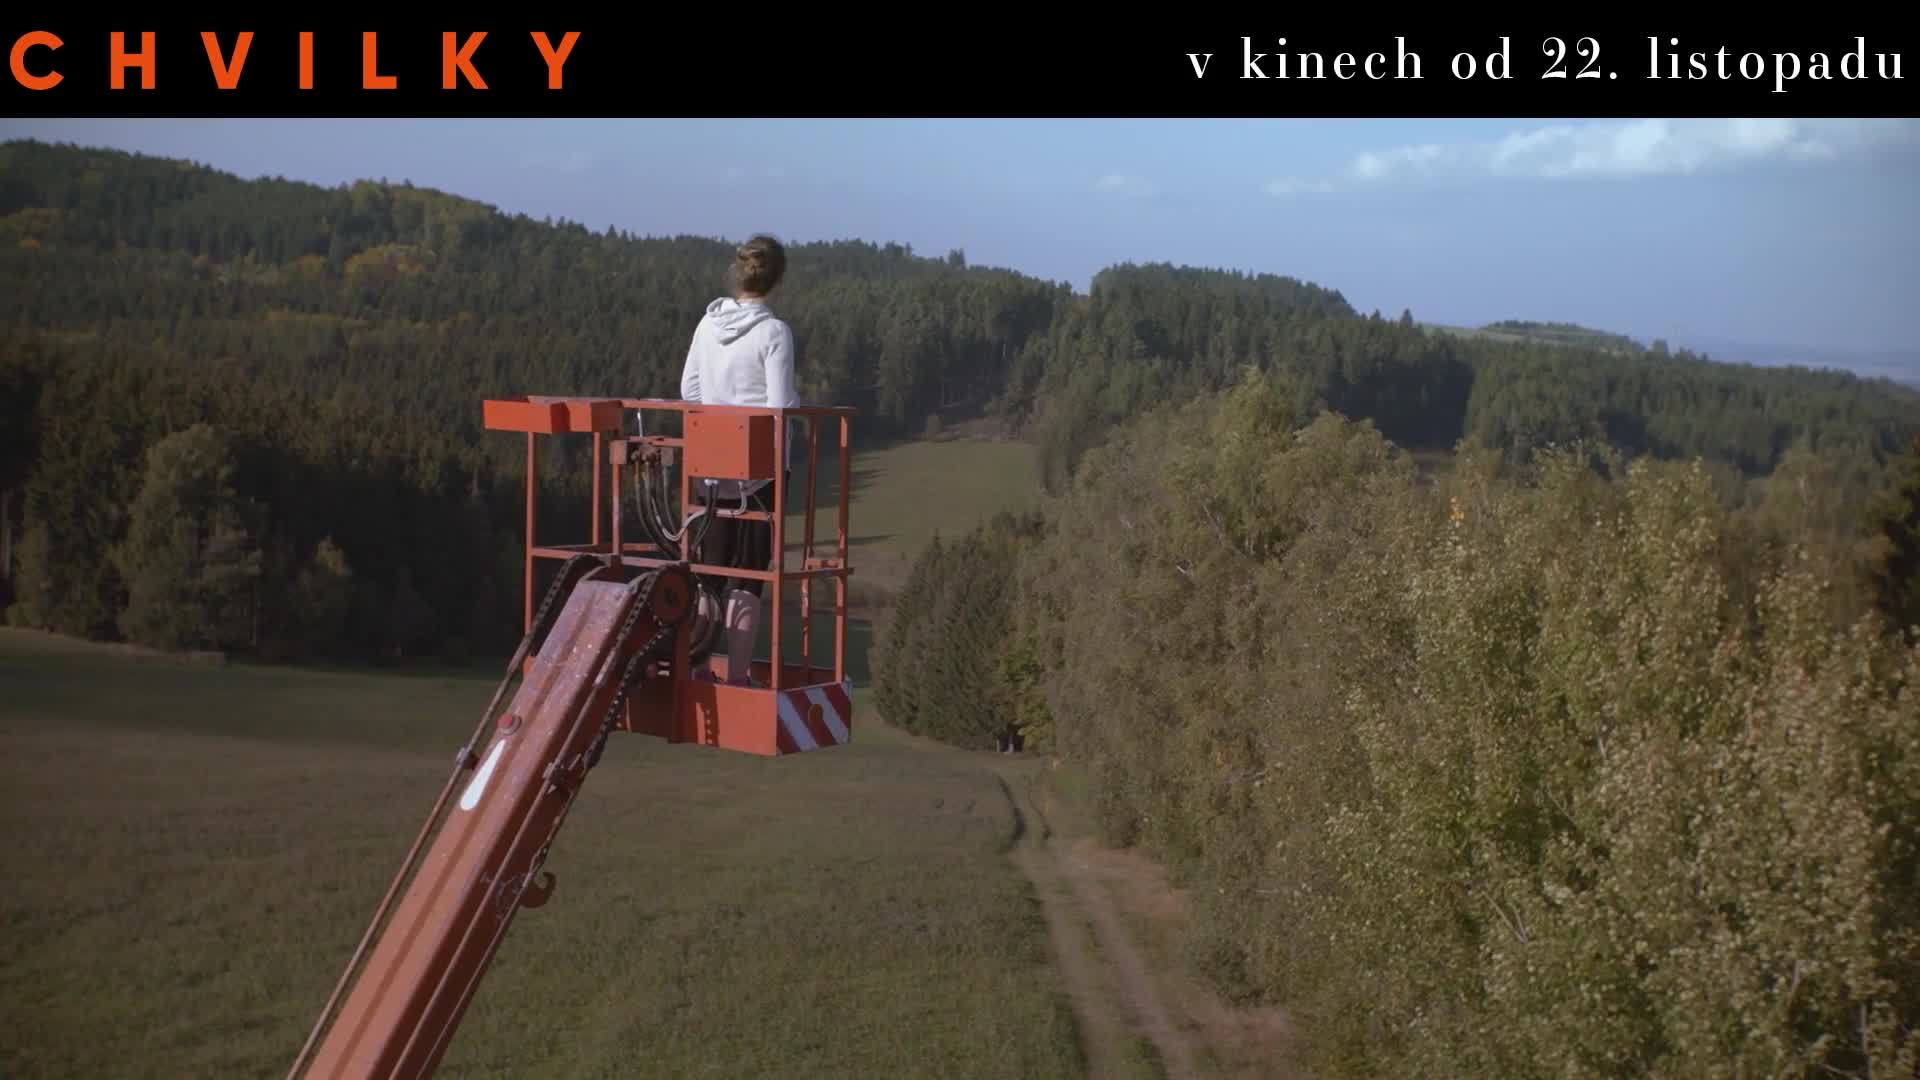 Chvilky (2018): TV spot